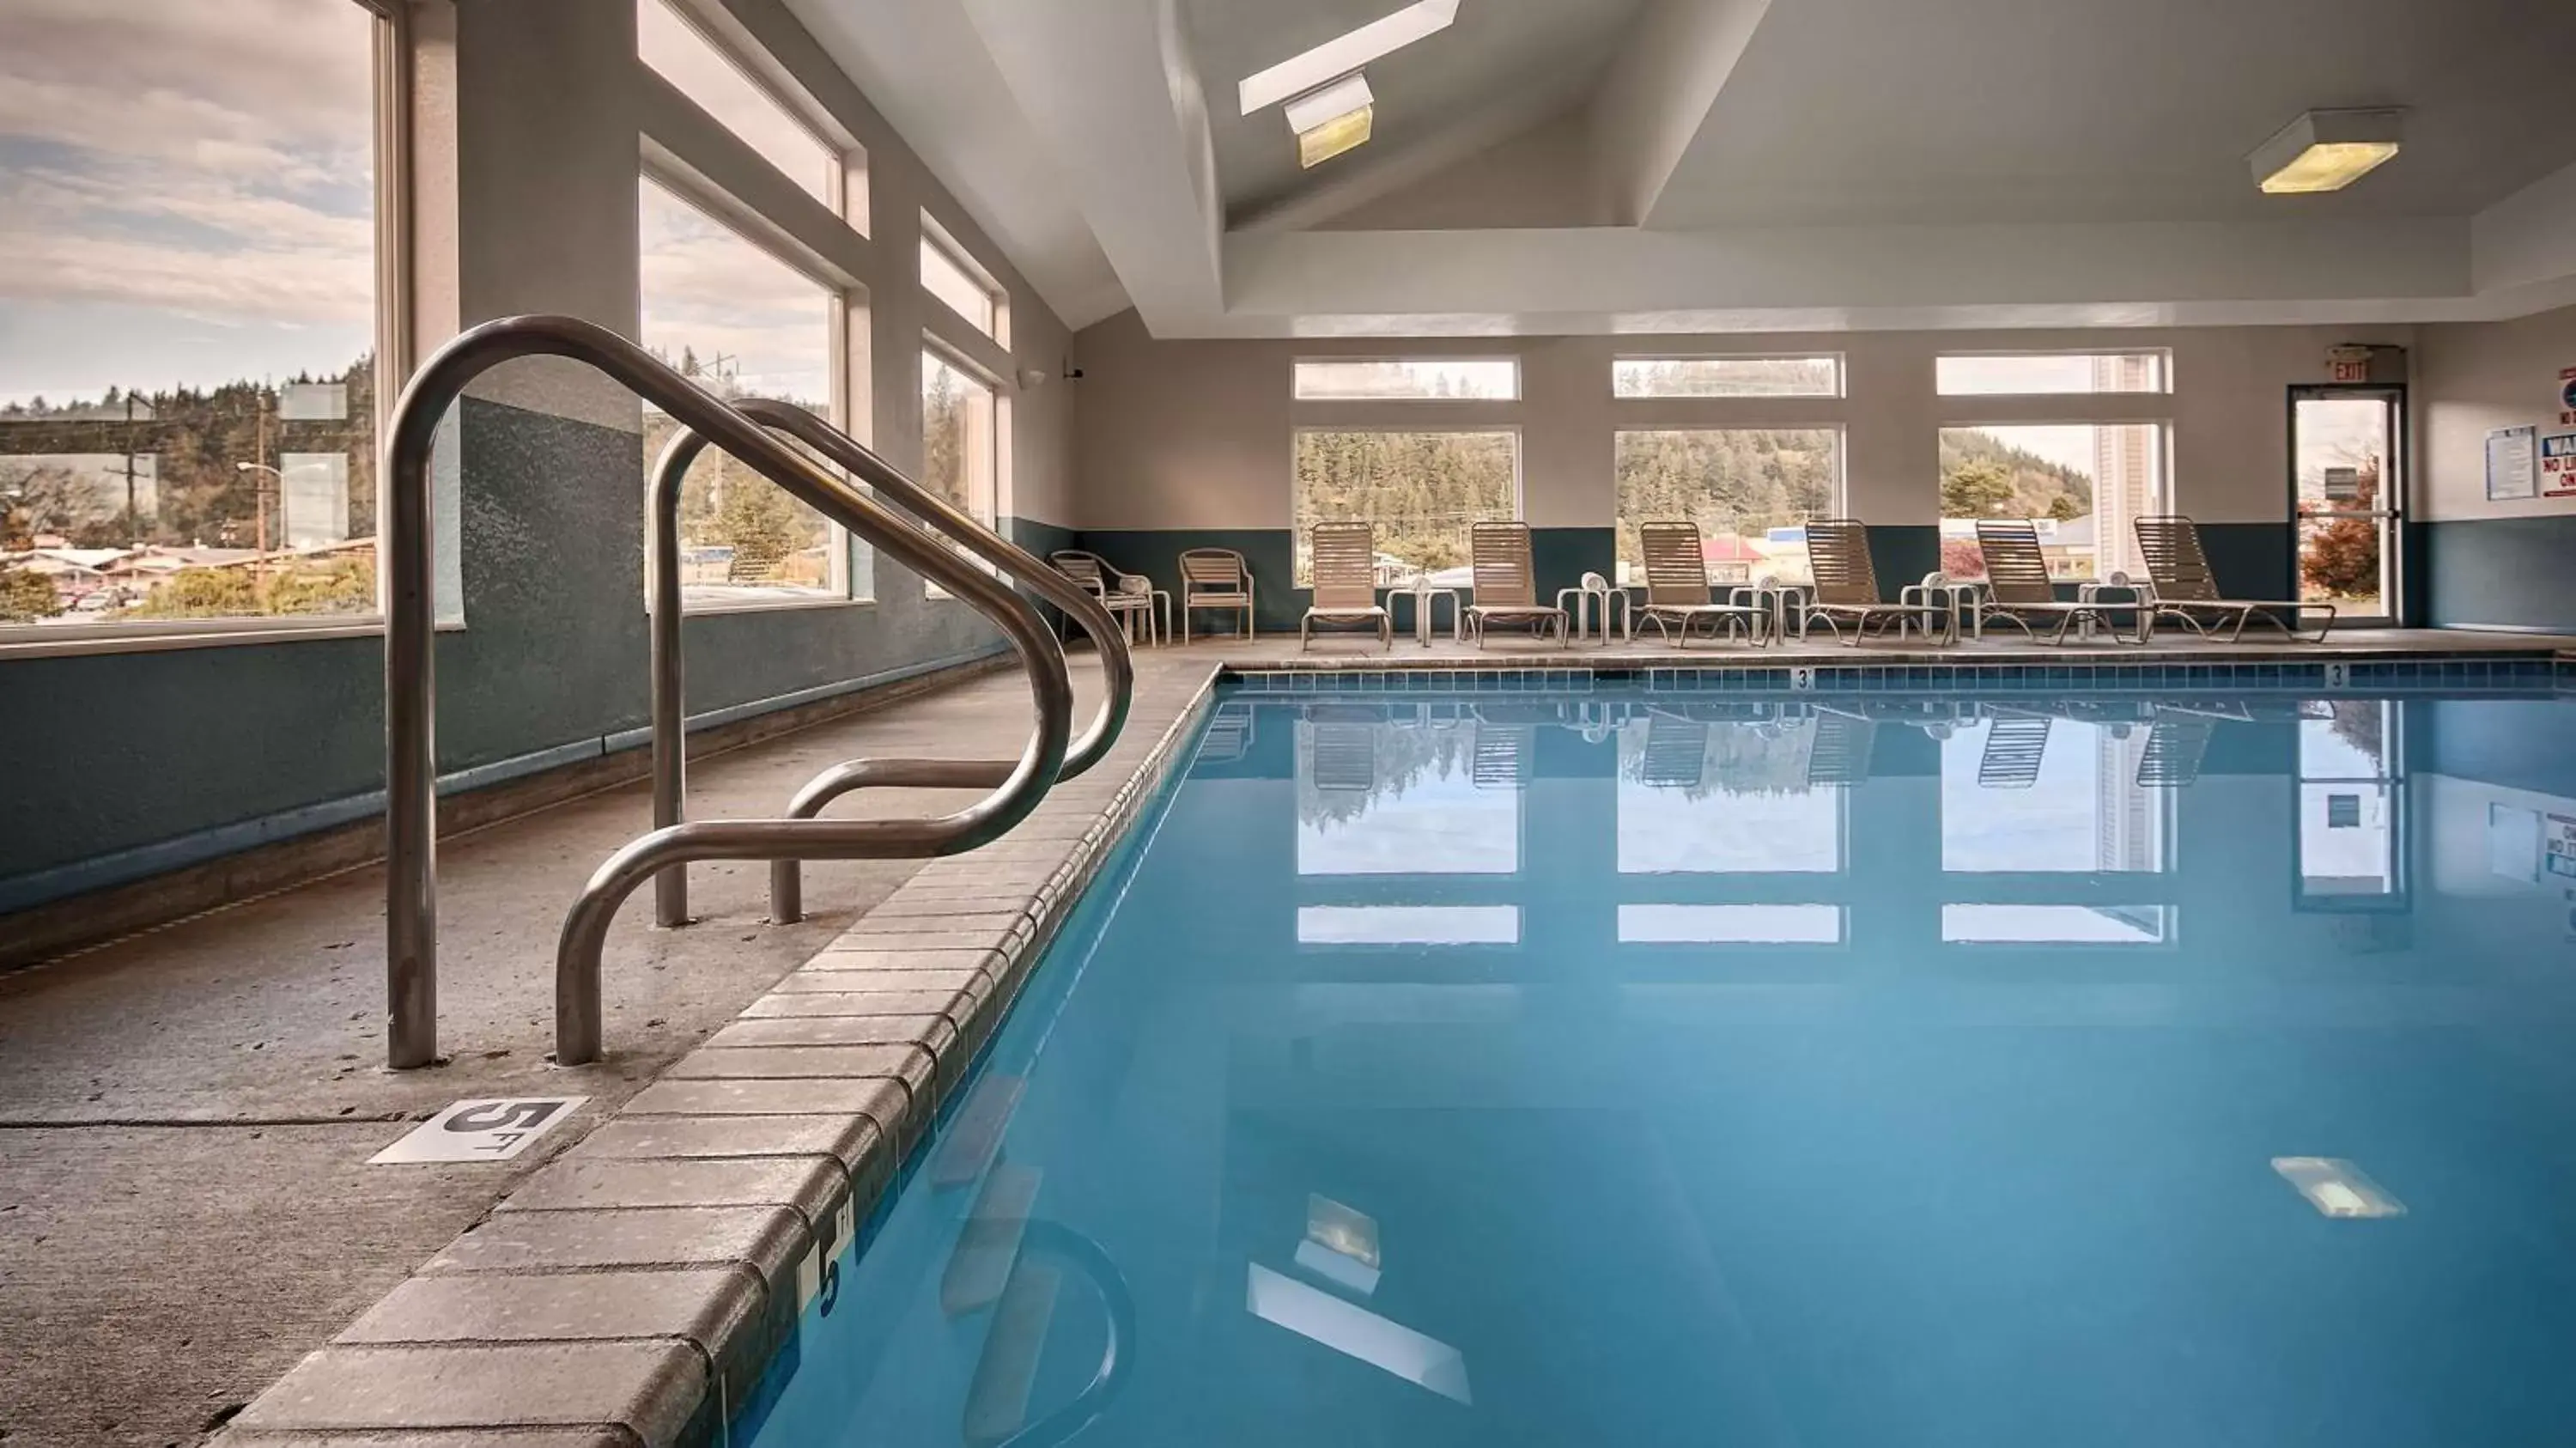 On site, Swimming Pool in Best Western Salbasgeon Inn & Suites